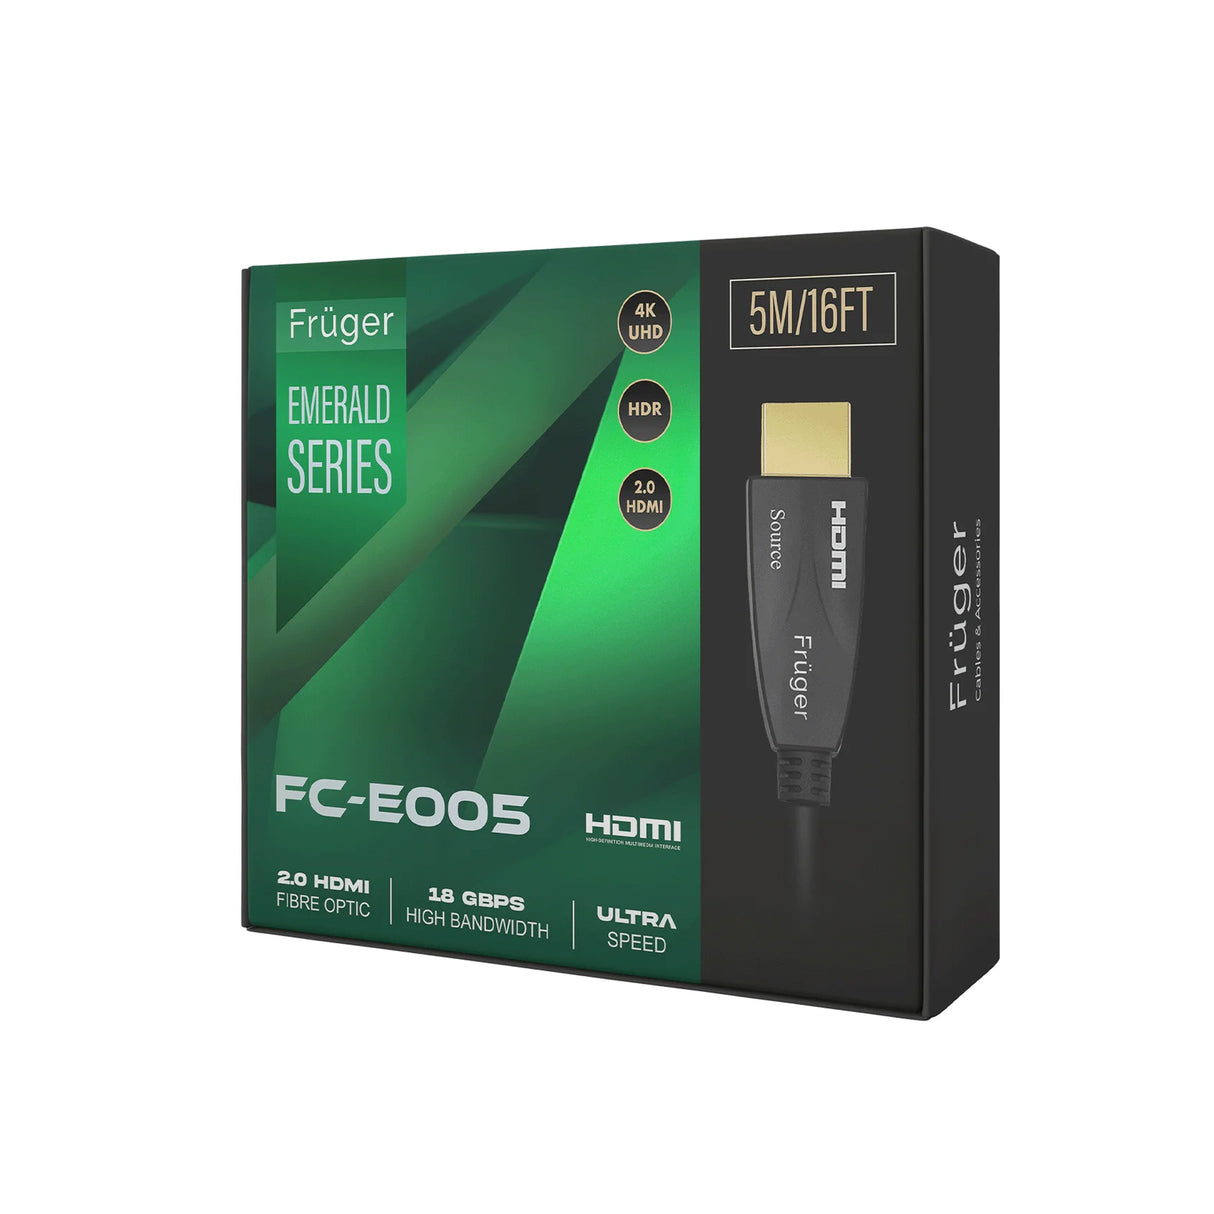 Fruger Emerald Series FC-E025 - Optic Fibre 4K Hdmi AOC Cable (25 Meters)